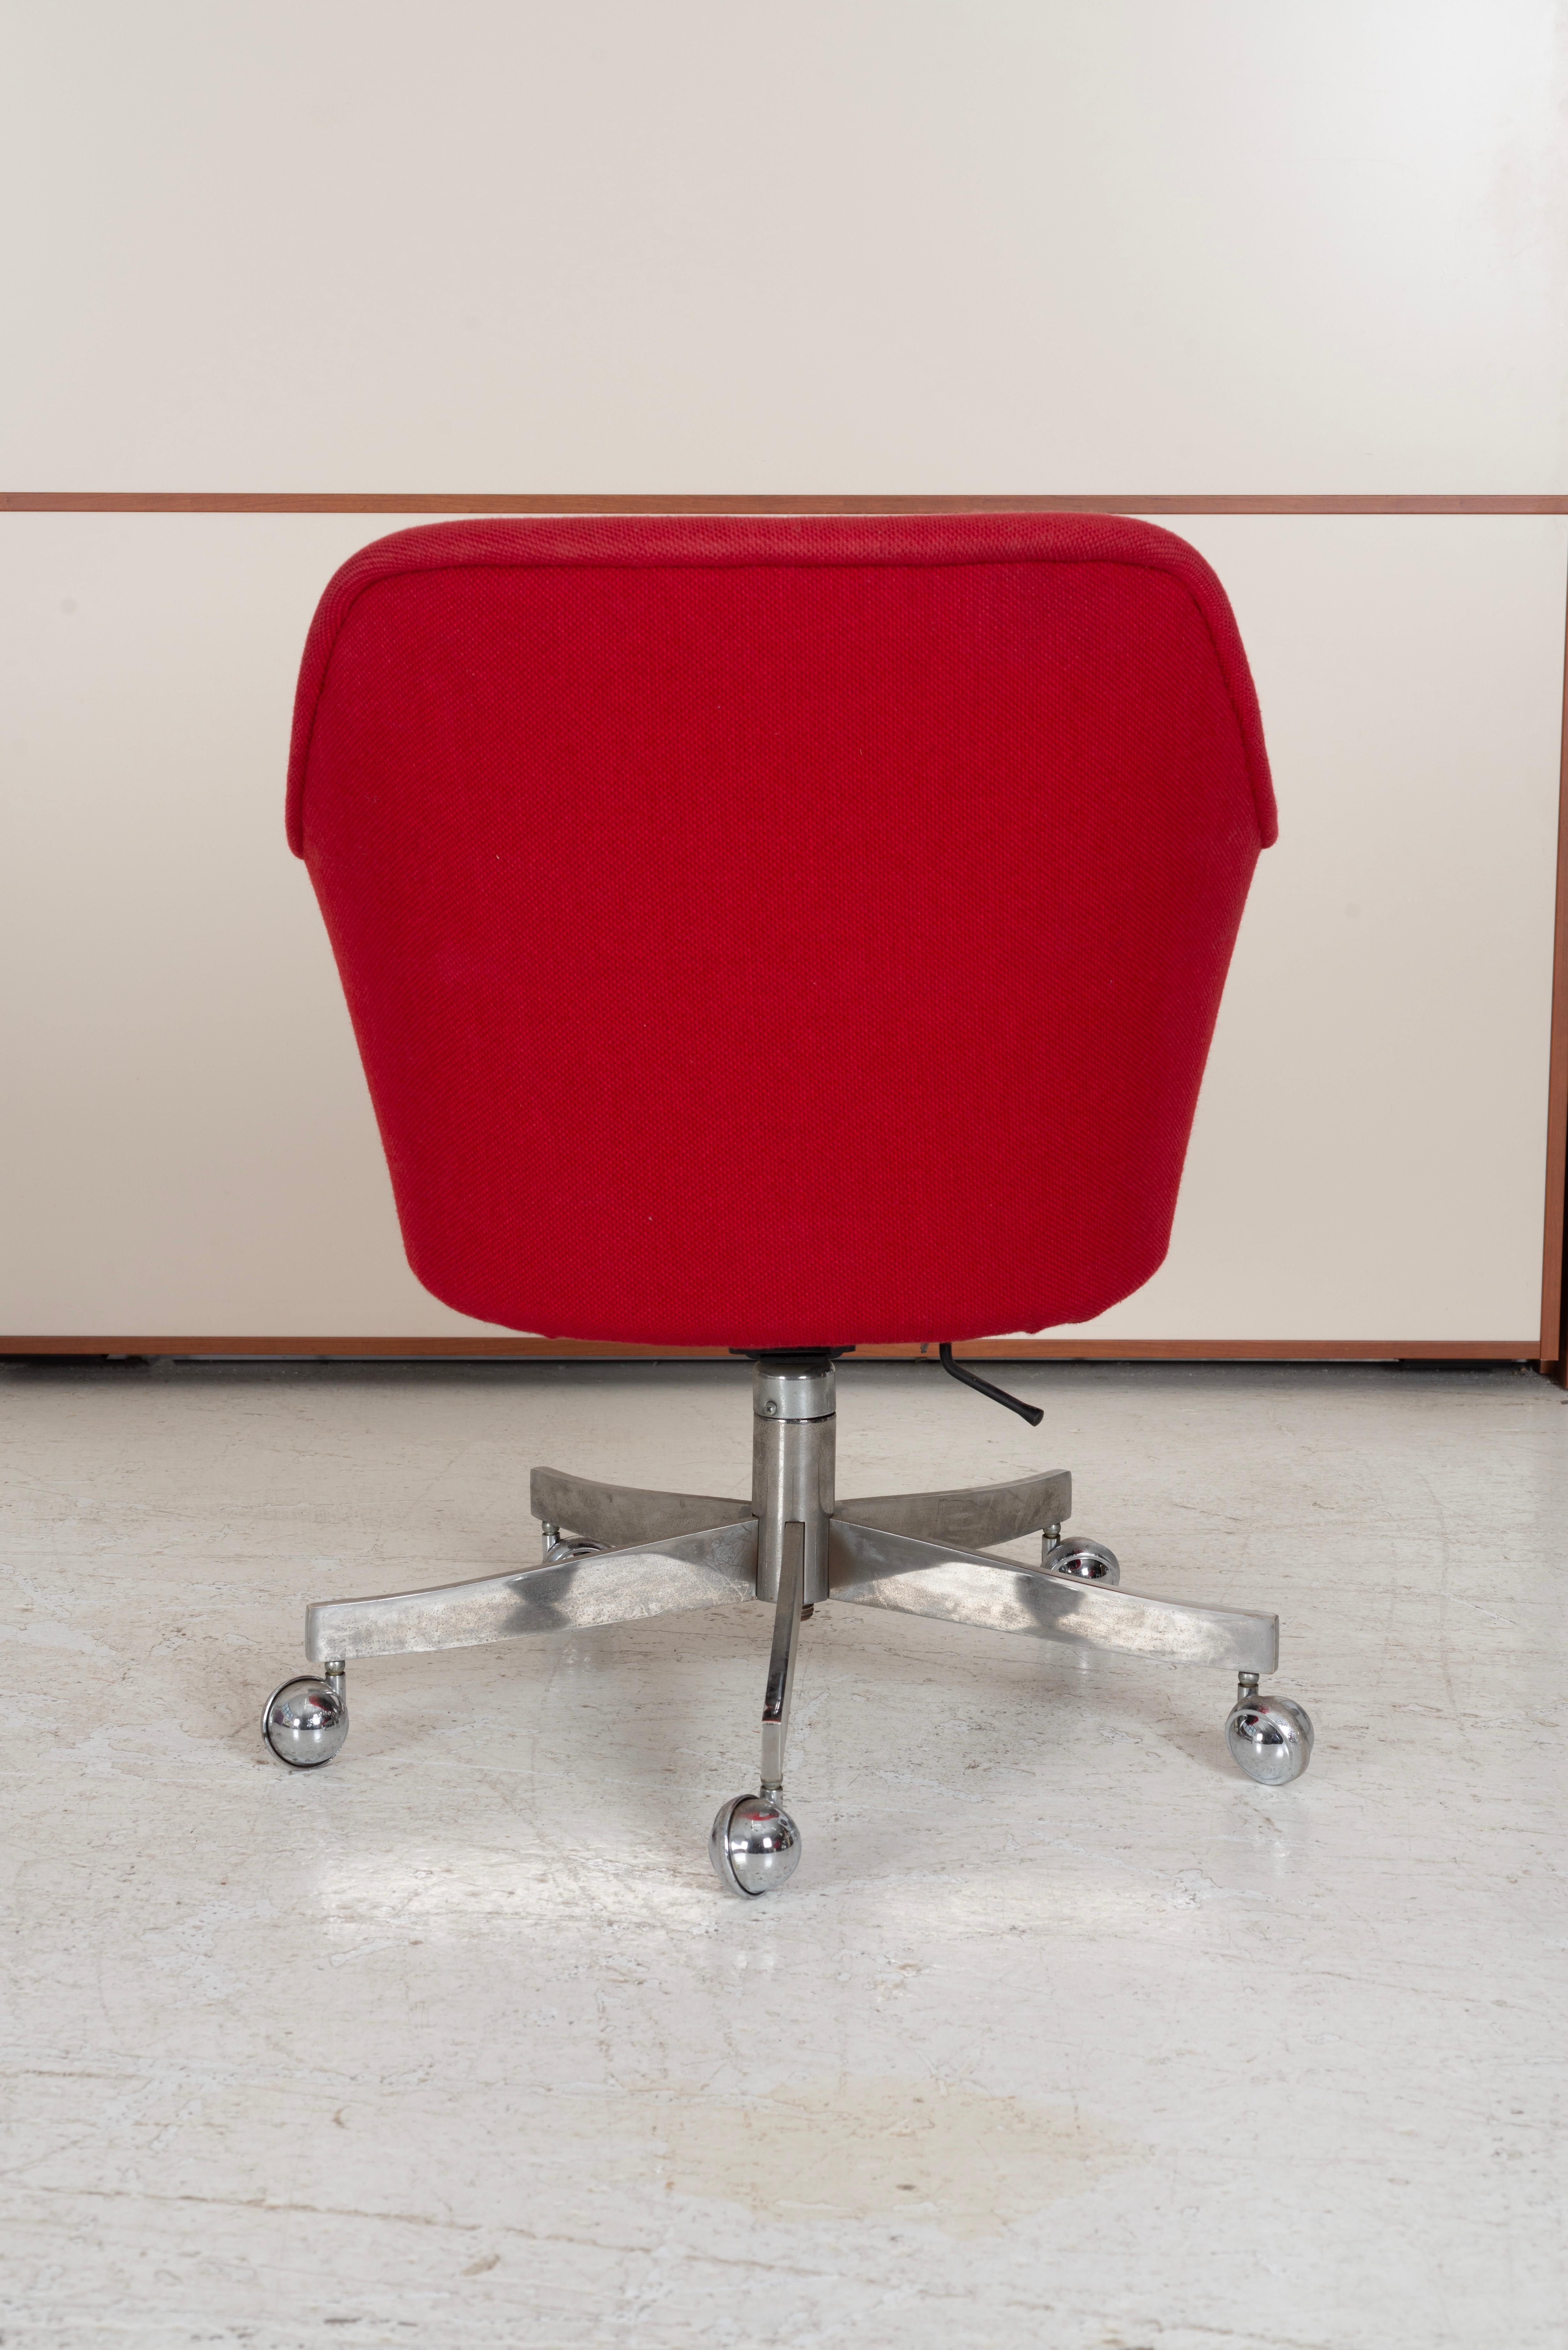 Stainless Steel Ward Bennett Desk Chair for Brickell Associates For Sale